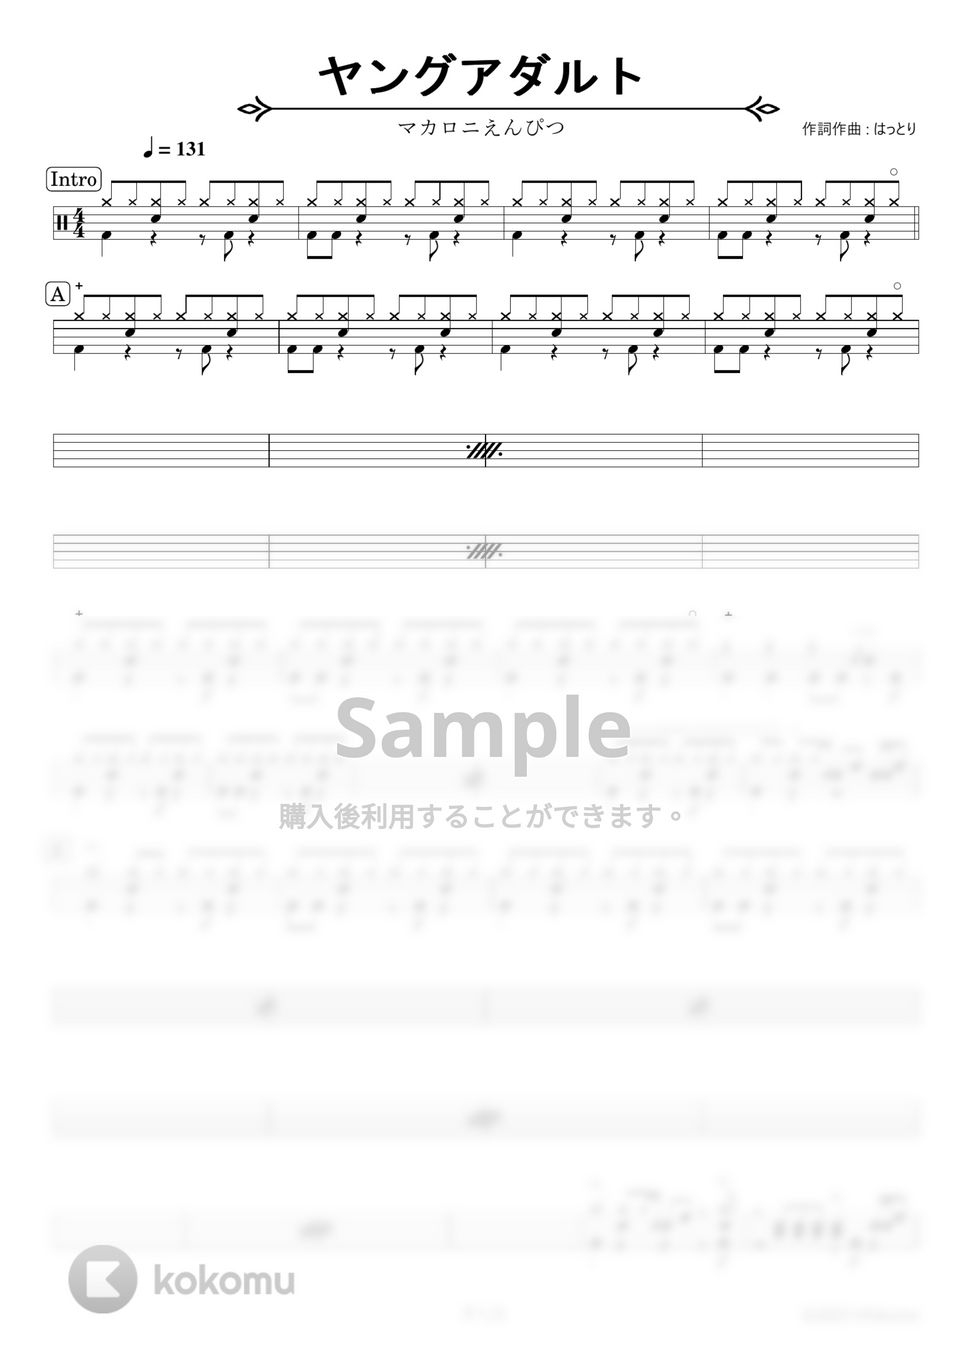 マカロニえんぴつ - ヤングアダルト【ドラム楽譜】 by HYdrums